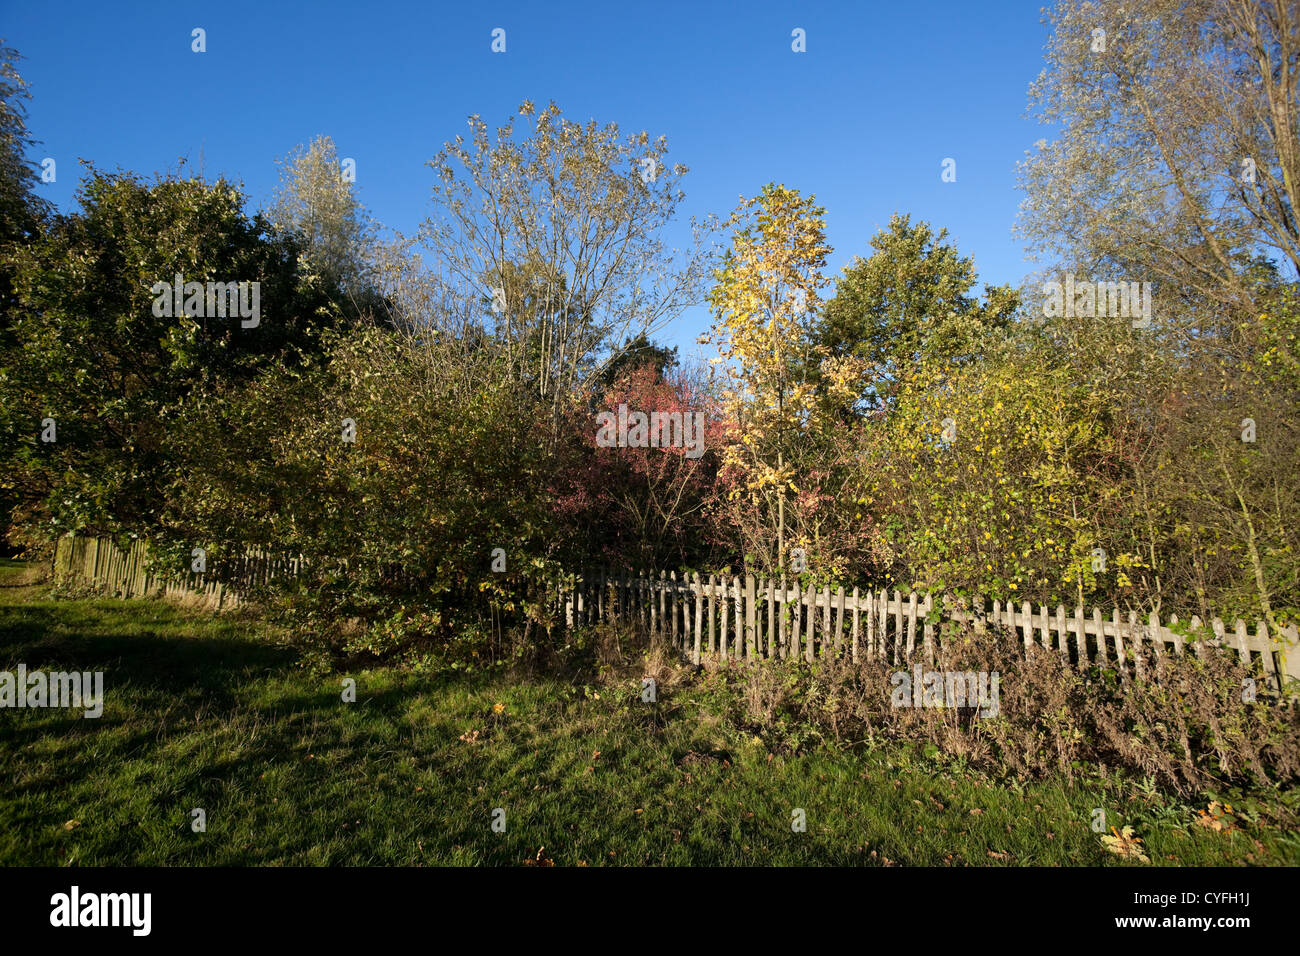 Alberi dietro una staccionata in legno, Hampstead Heath, London, England, Regno Unito Foto Stock